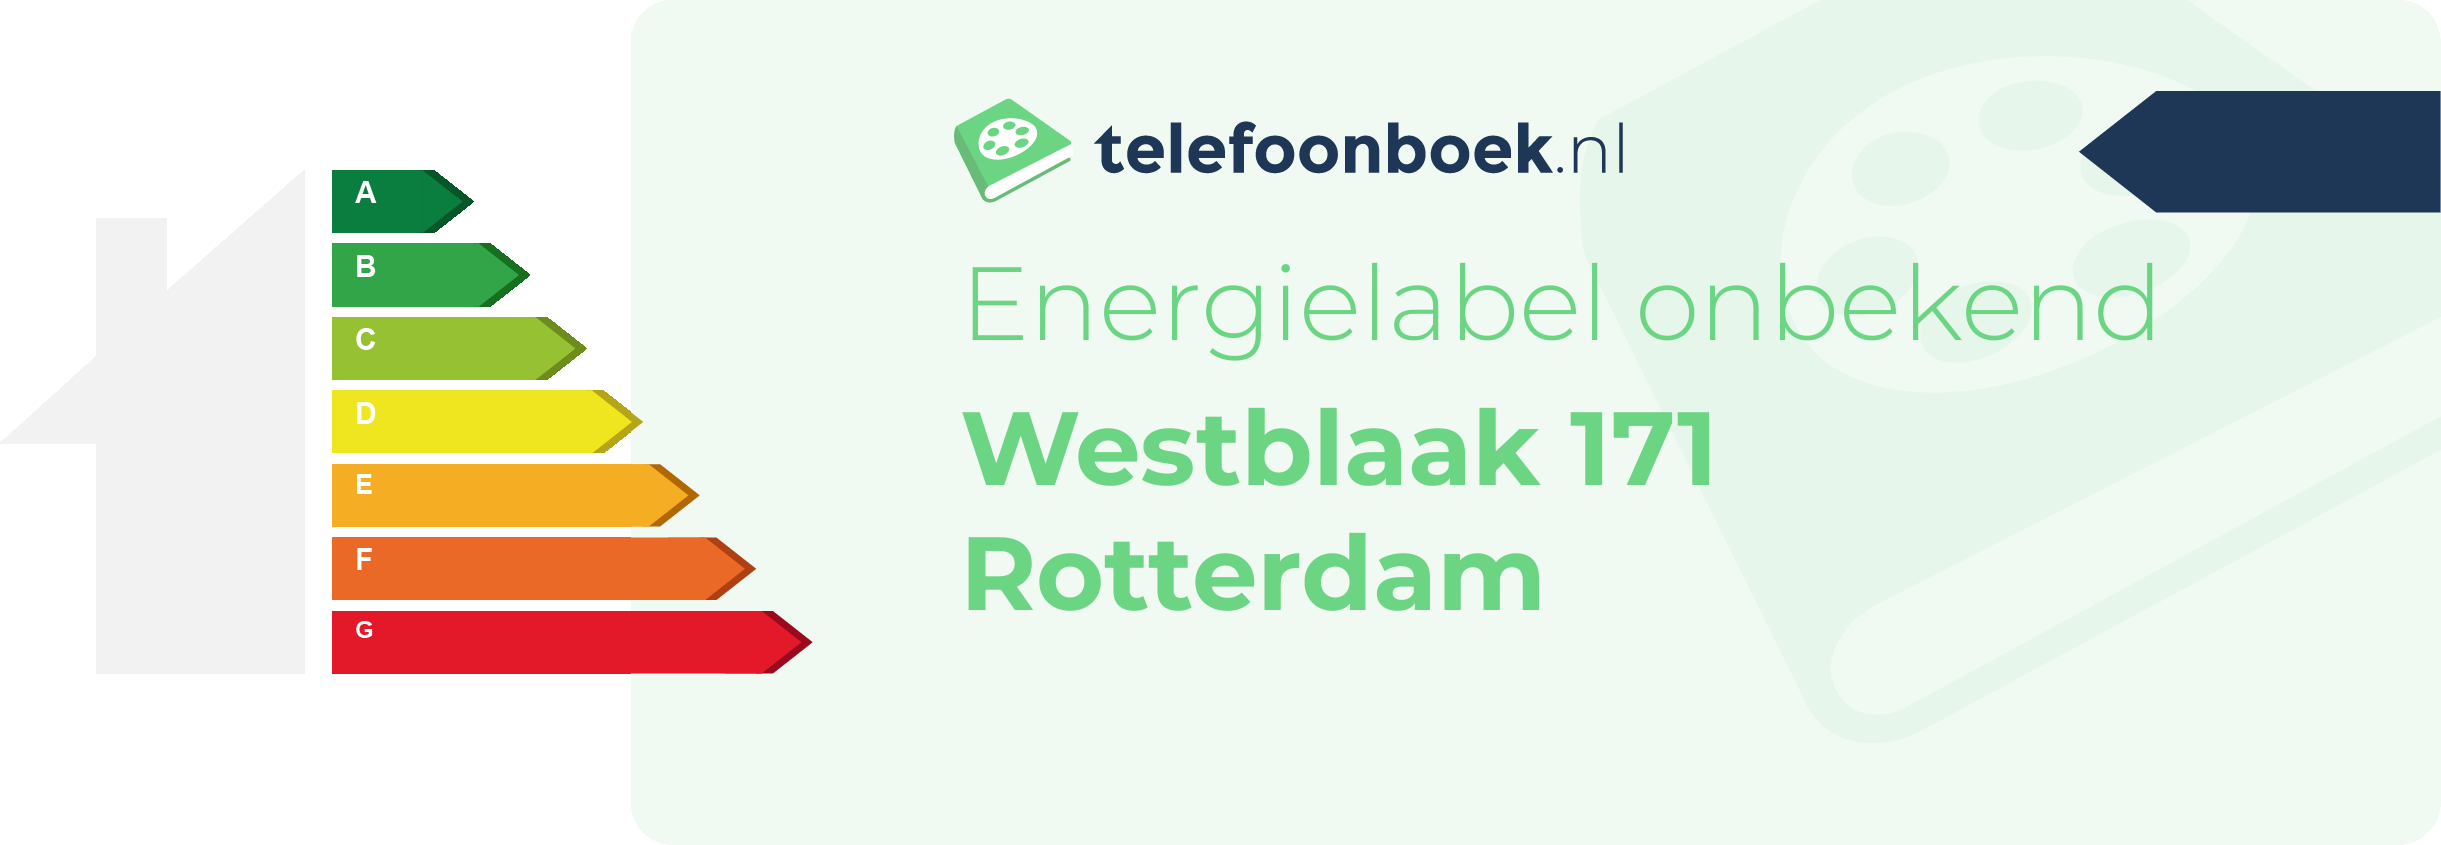 Energielabel Westblaak 171 Rotterdam